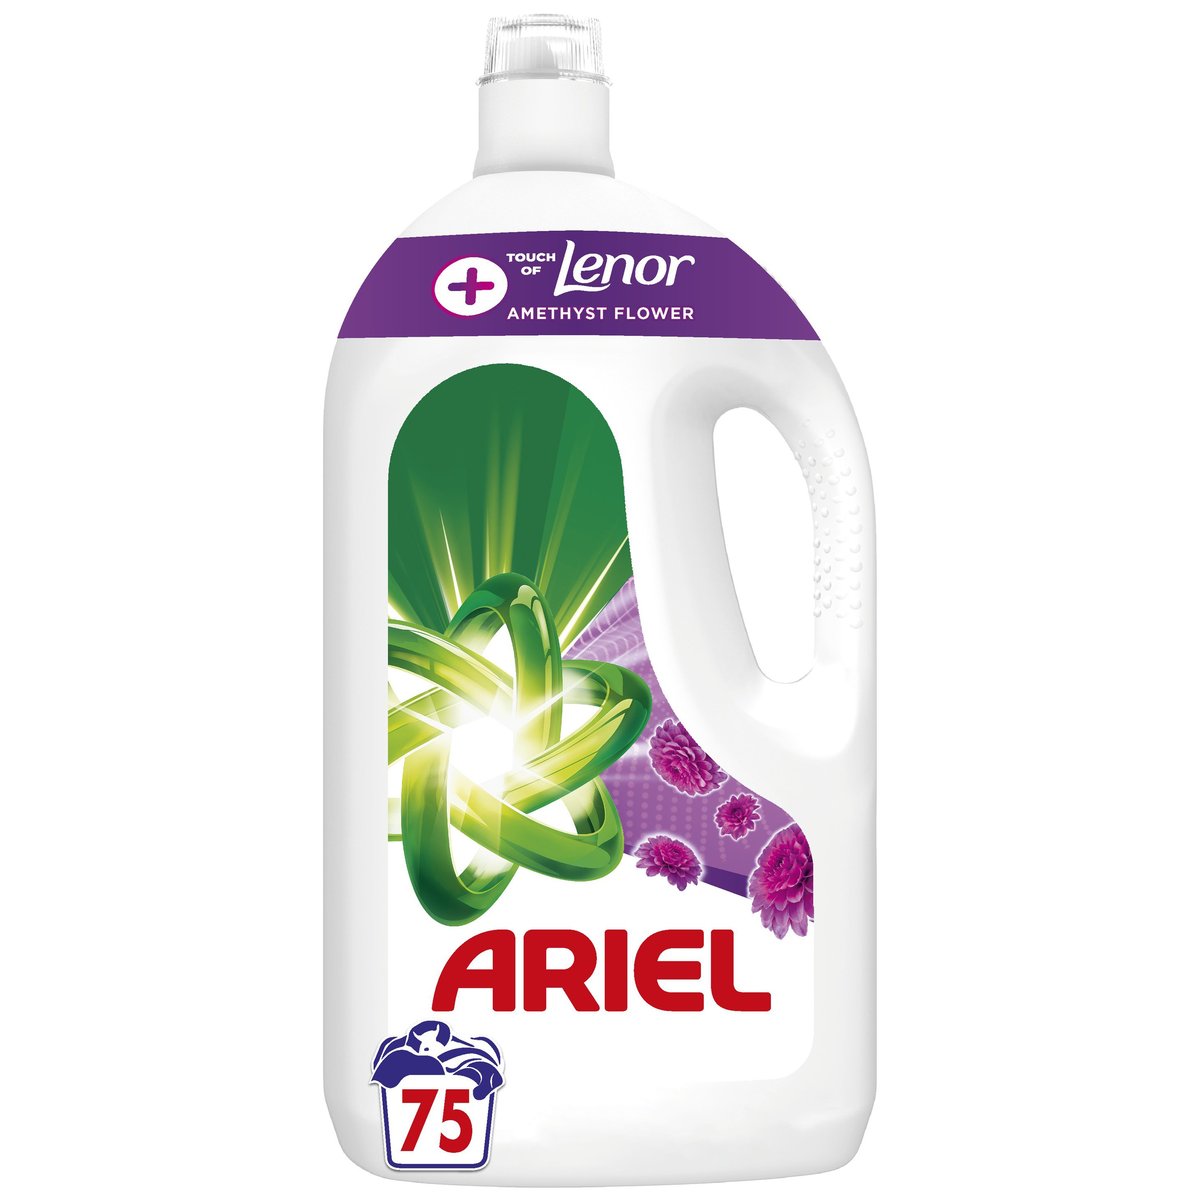 Ariel+ Touch Of Lenor Amethyst Flower prací gel (3,75 l)